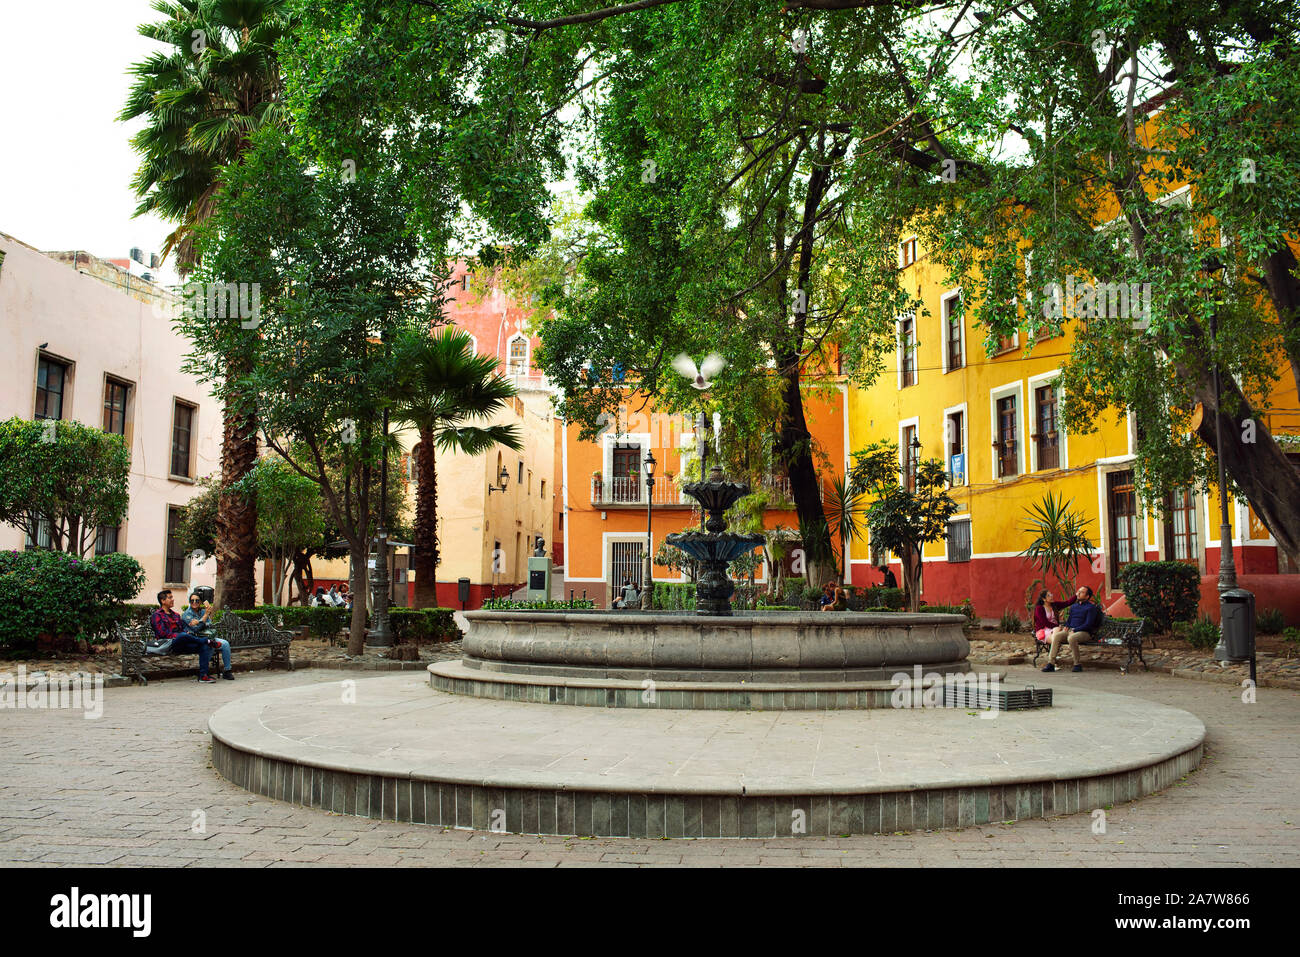 Locals taking a break around the fountain in Parque Reforma (Reform Park). Guanajuato, Mexico Stock Photo